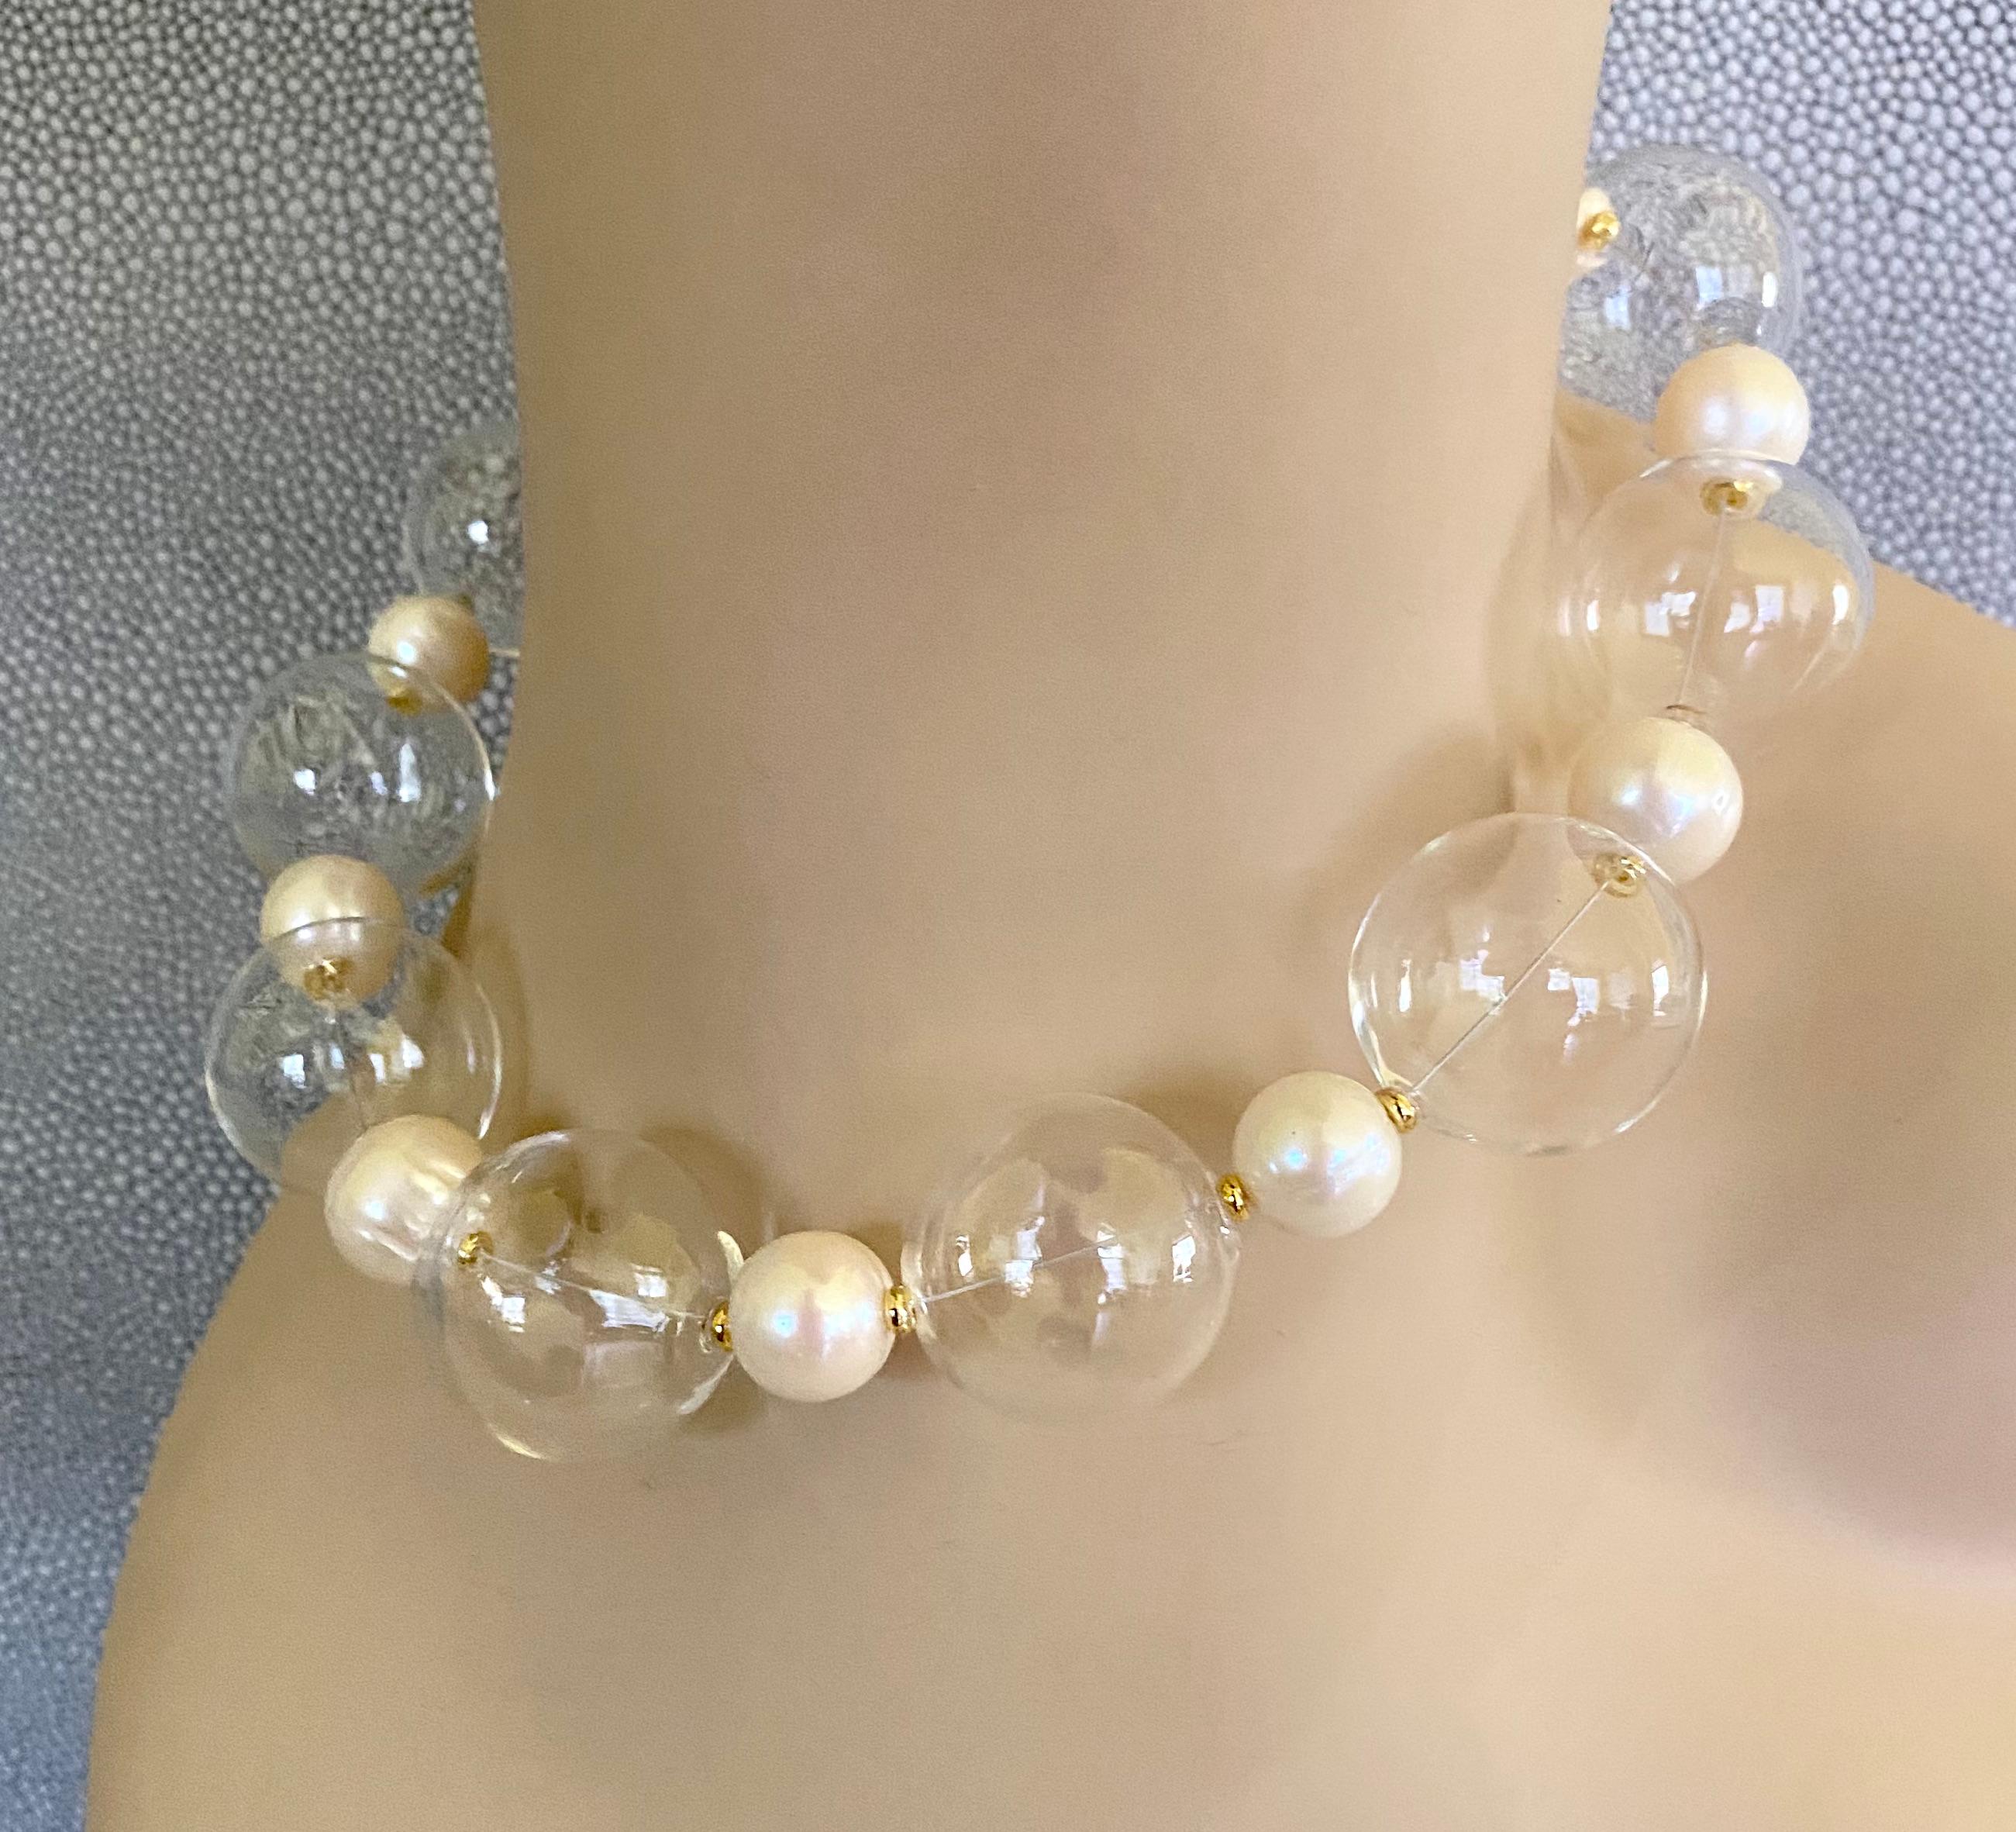 Die mundgeblasenen Glasblasen werden bei dieser sprudelnden Halskette mit weißen Barockperlen kombiniert.  Die Perlen messen großzügig 1 Zoll und sind makellos gestaltet.  Sie sind mit 12 mm großen weißen Barockperlen und goldenen Rondellen besetzt.